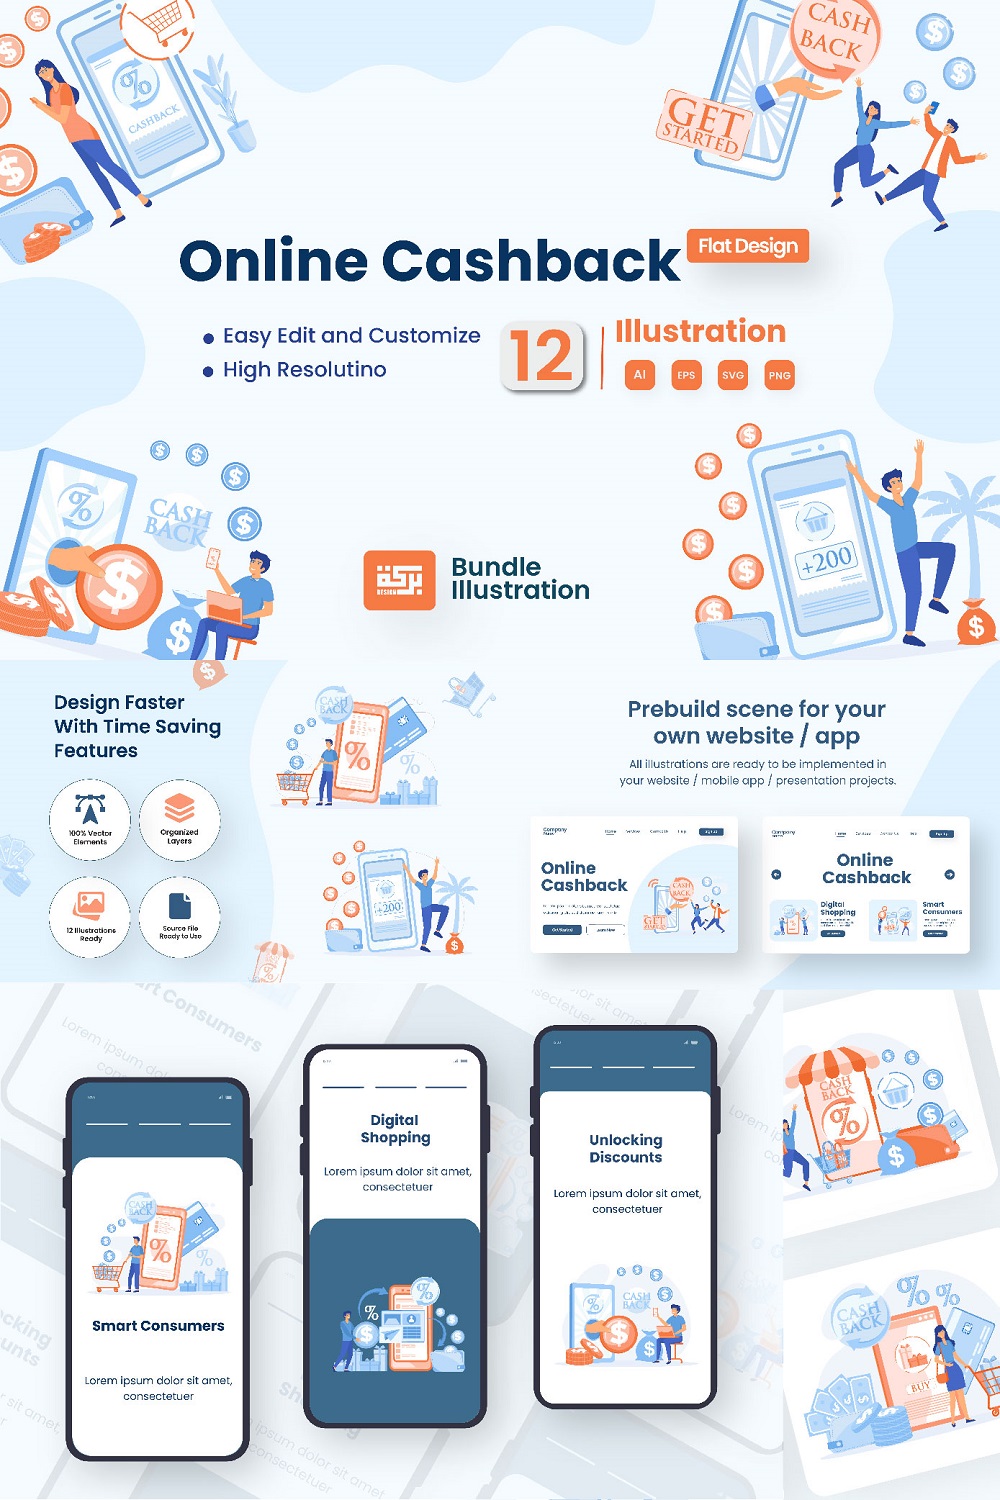 Mobile Cash Back Illustration Design pinterest preview image.